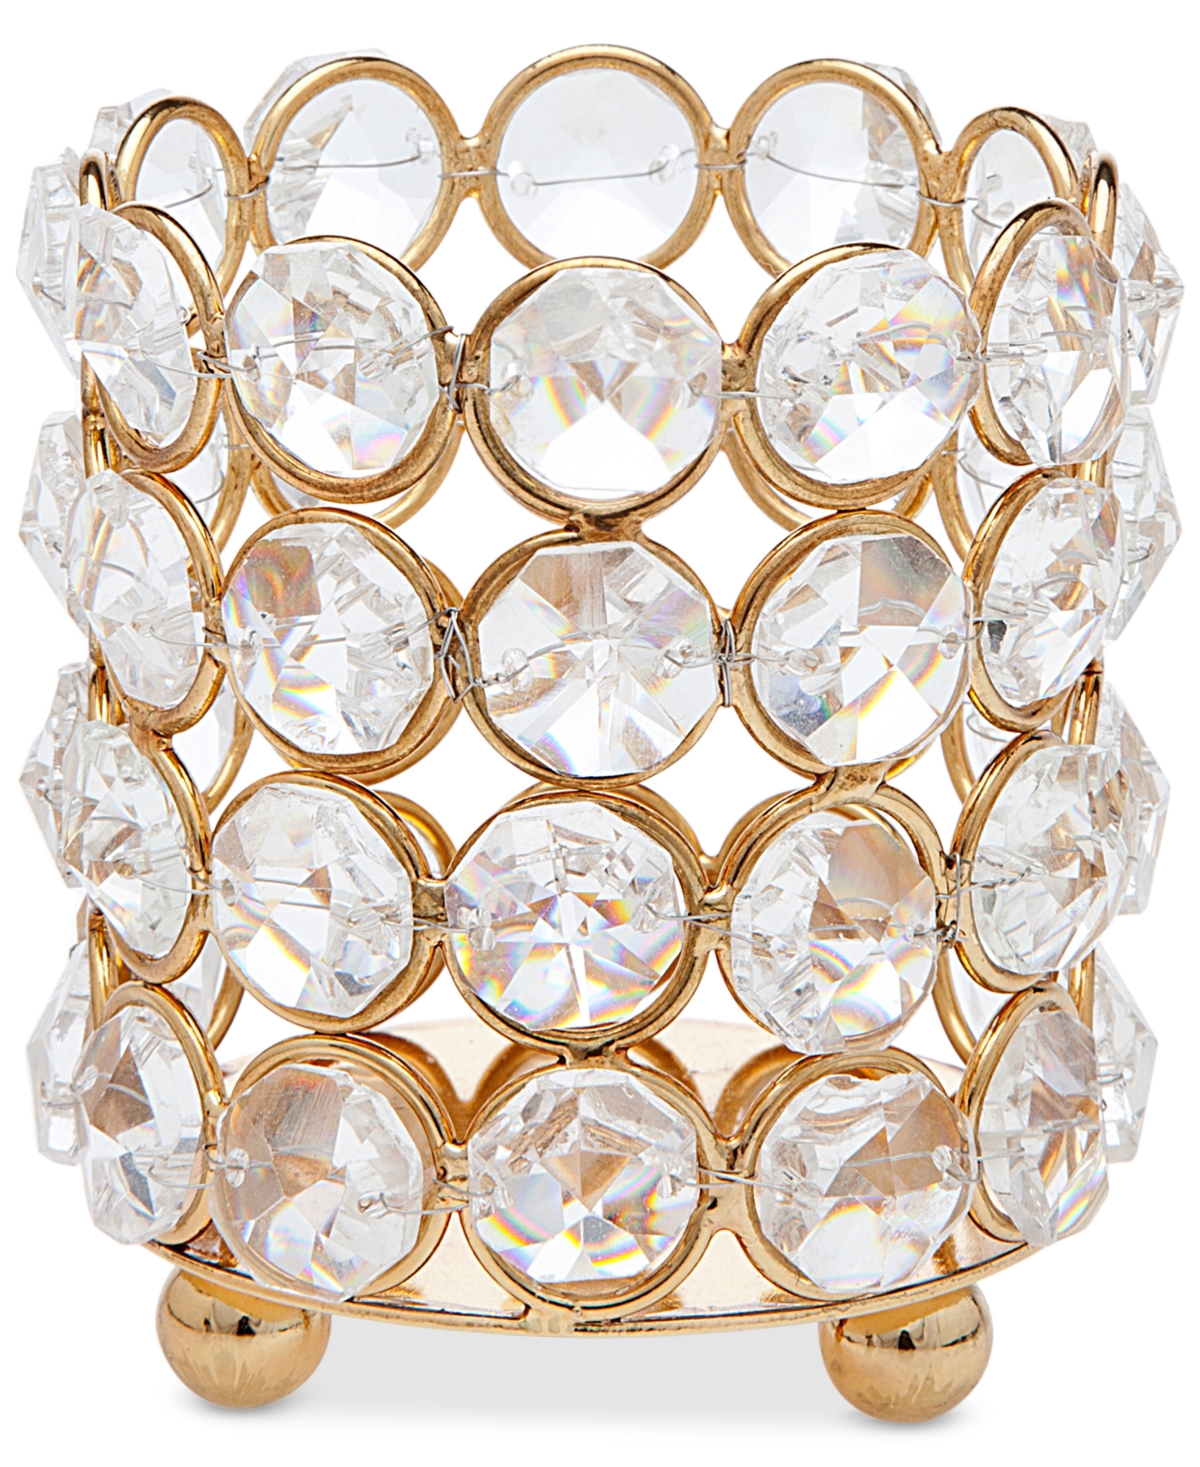 Godinger Lighting By Design Crystal Votive In Gold